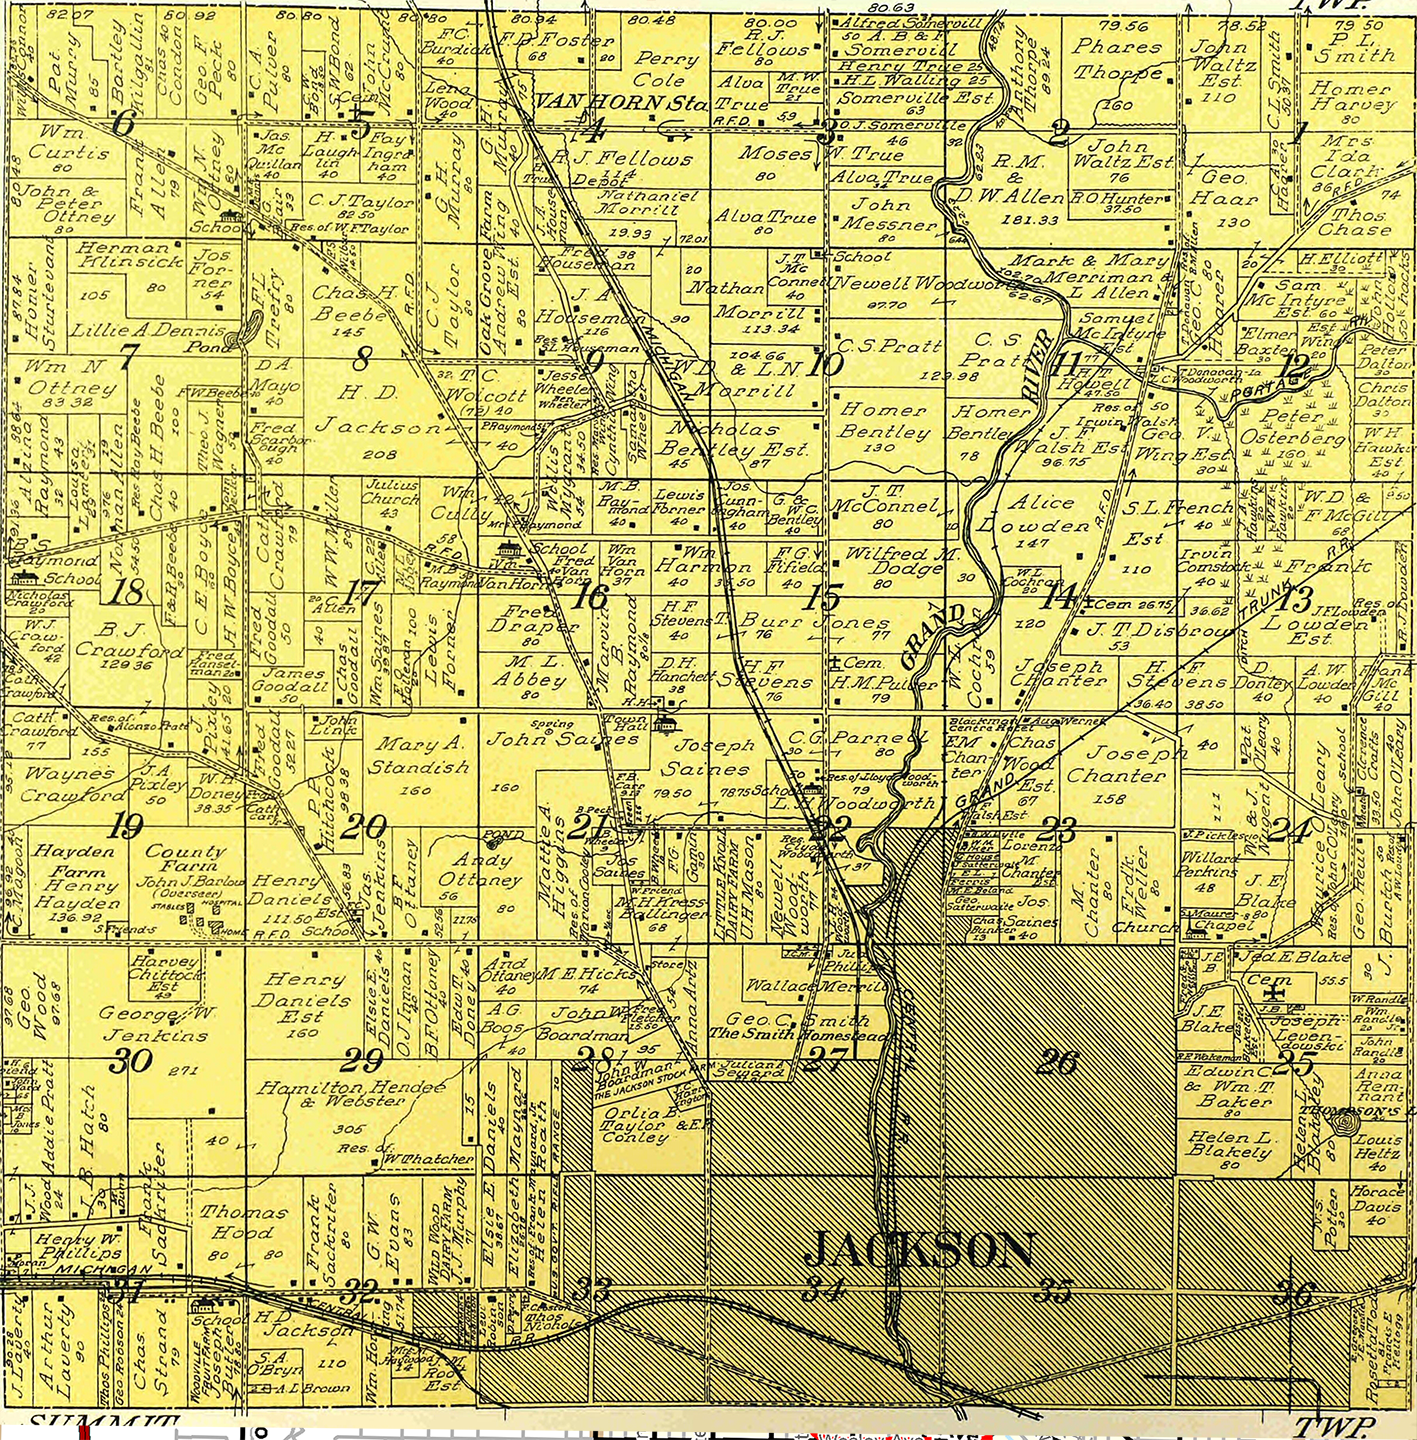 1911 Blackman Township, Michigan landownership map